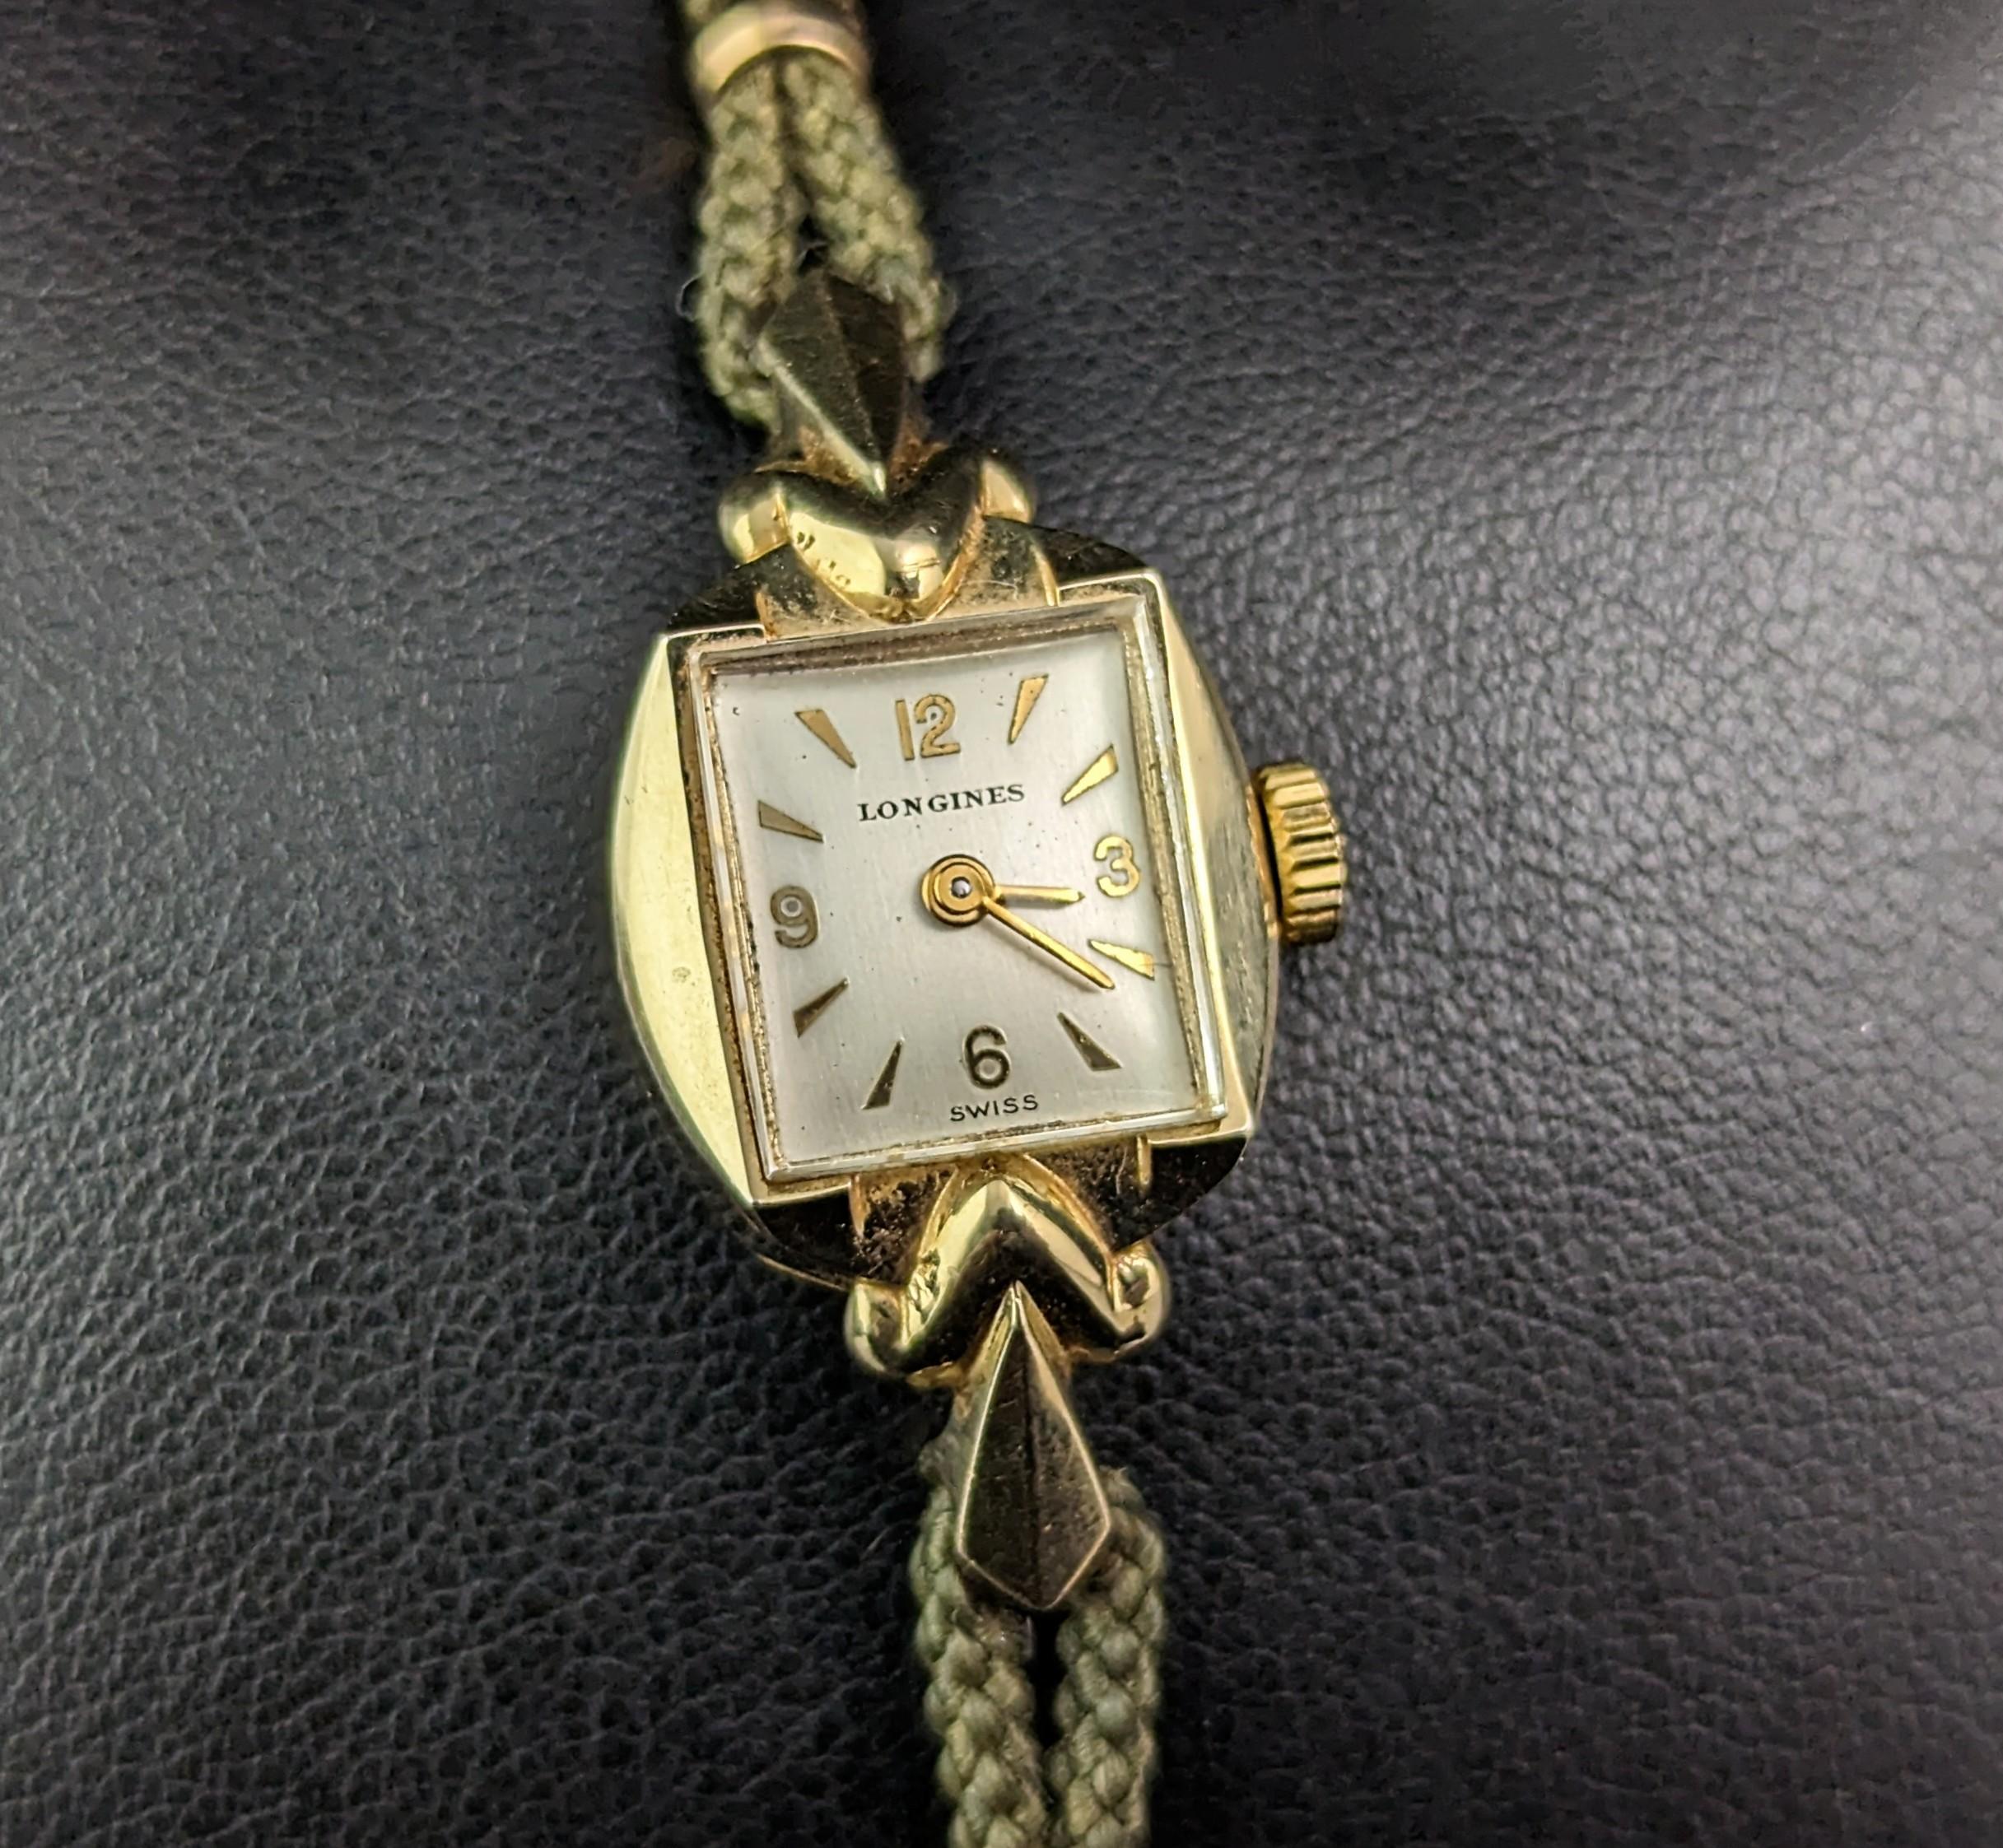 Une magnifique montre-bracelet vintage en or 14ct pour dames.

Elle possède un boîtier en or jaune, un cadran de couleur champagne avec des chiffres arabes et des aiguilles en or, ainsi qu'un cristal en relief.

Fabriquée par la célèbre maison